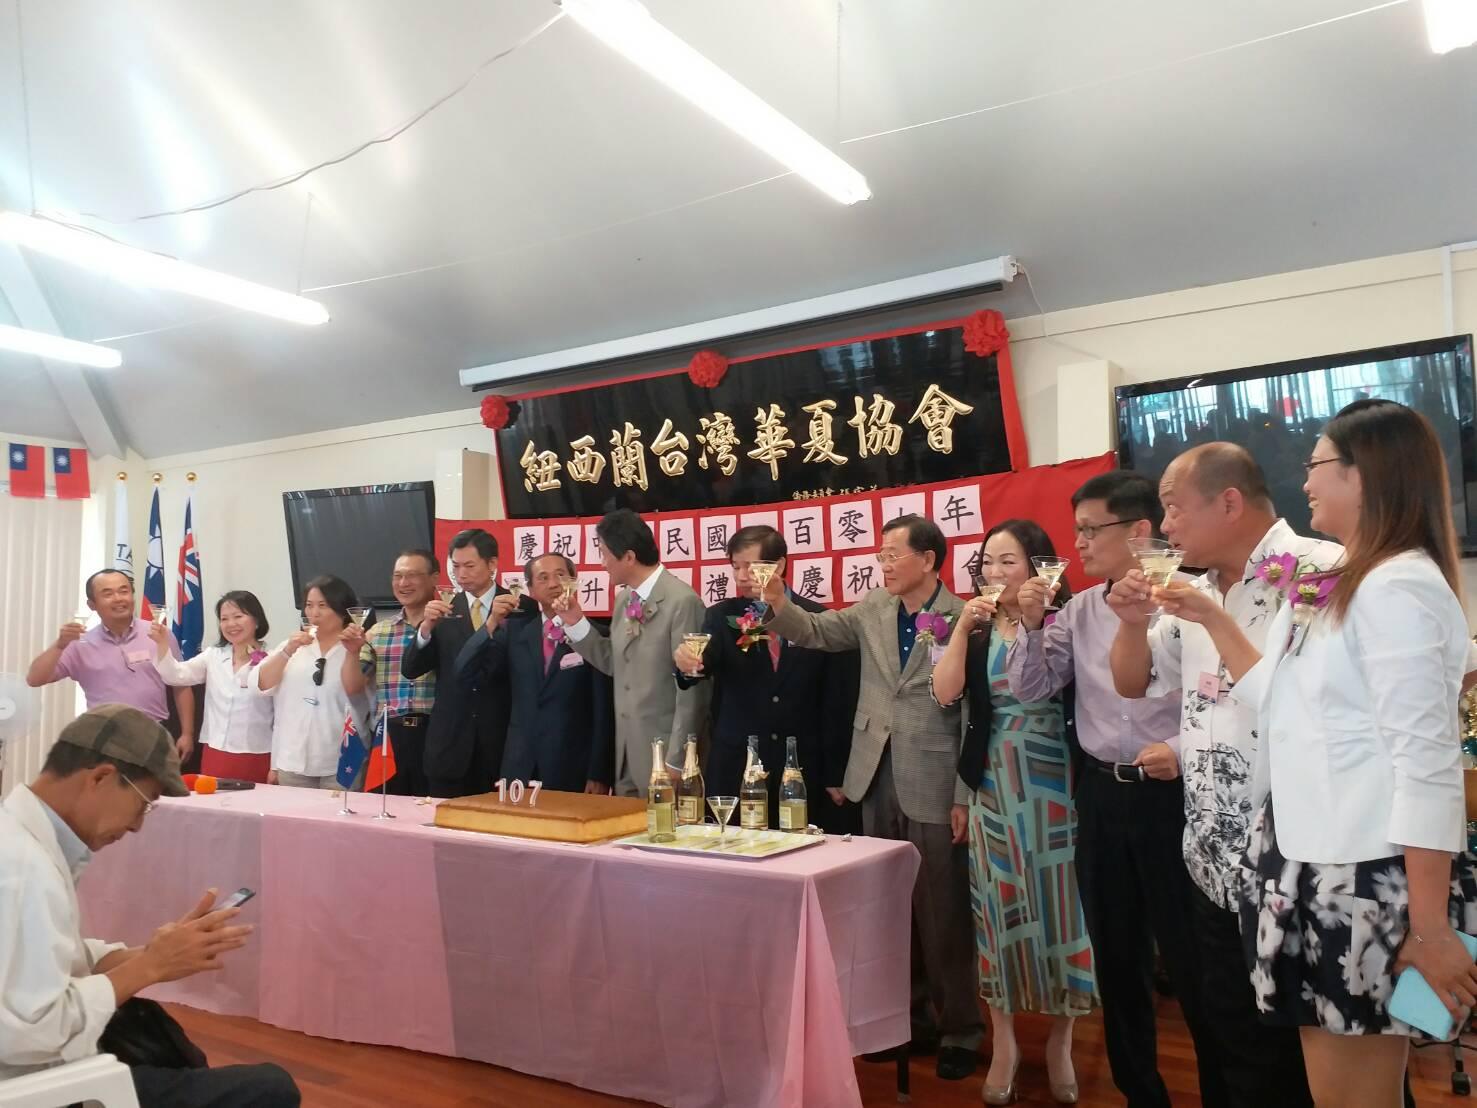 紐西蘭奧克蘭僑界舉行慶祝中華民國107年元旦升旗典禮暨慶祝茶會